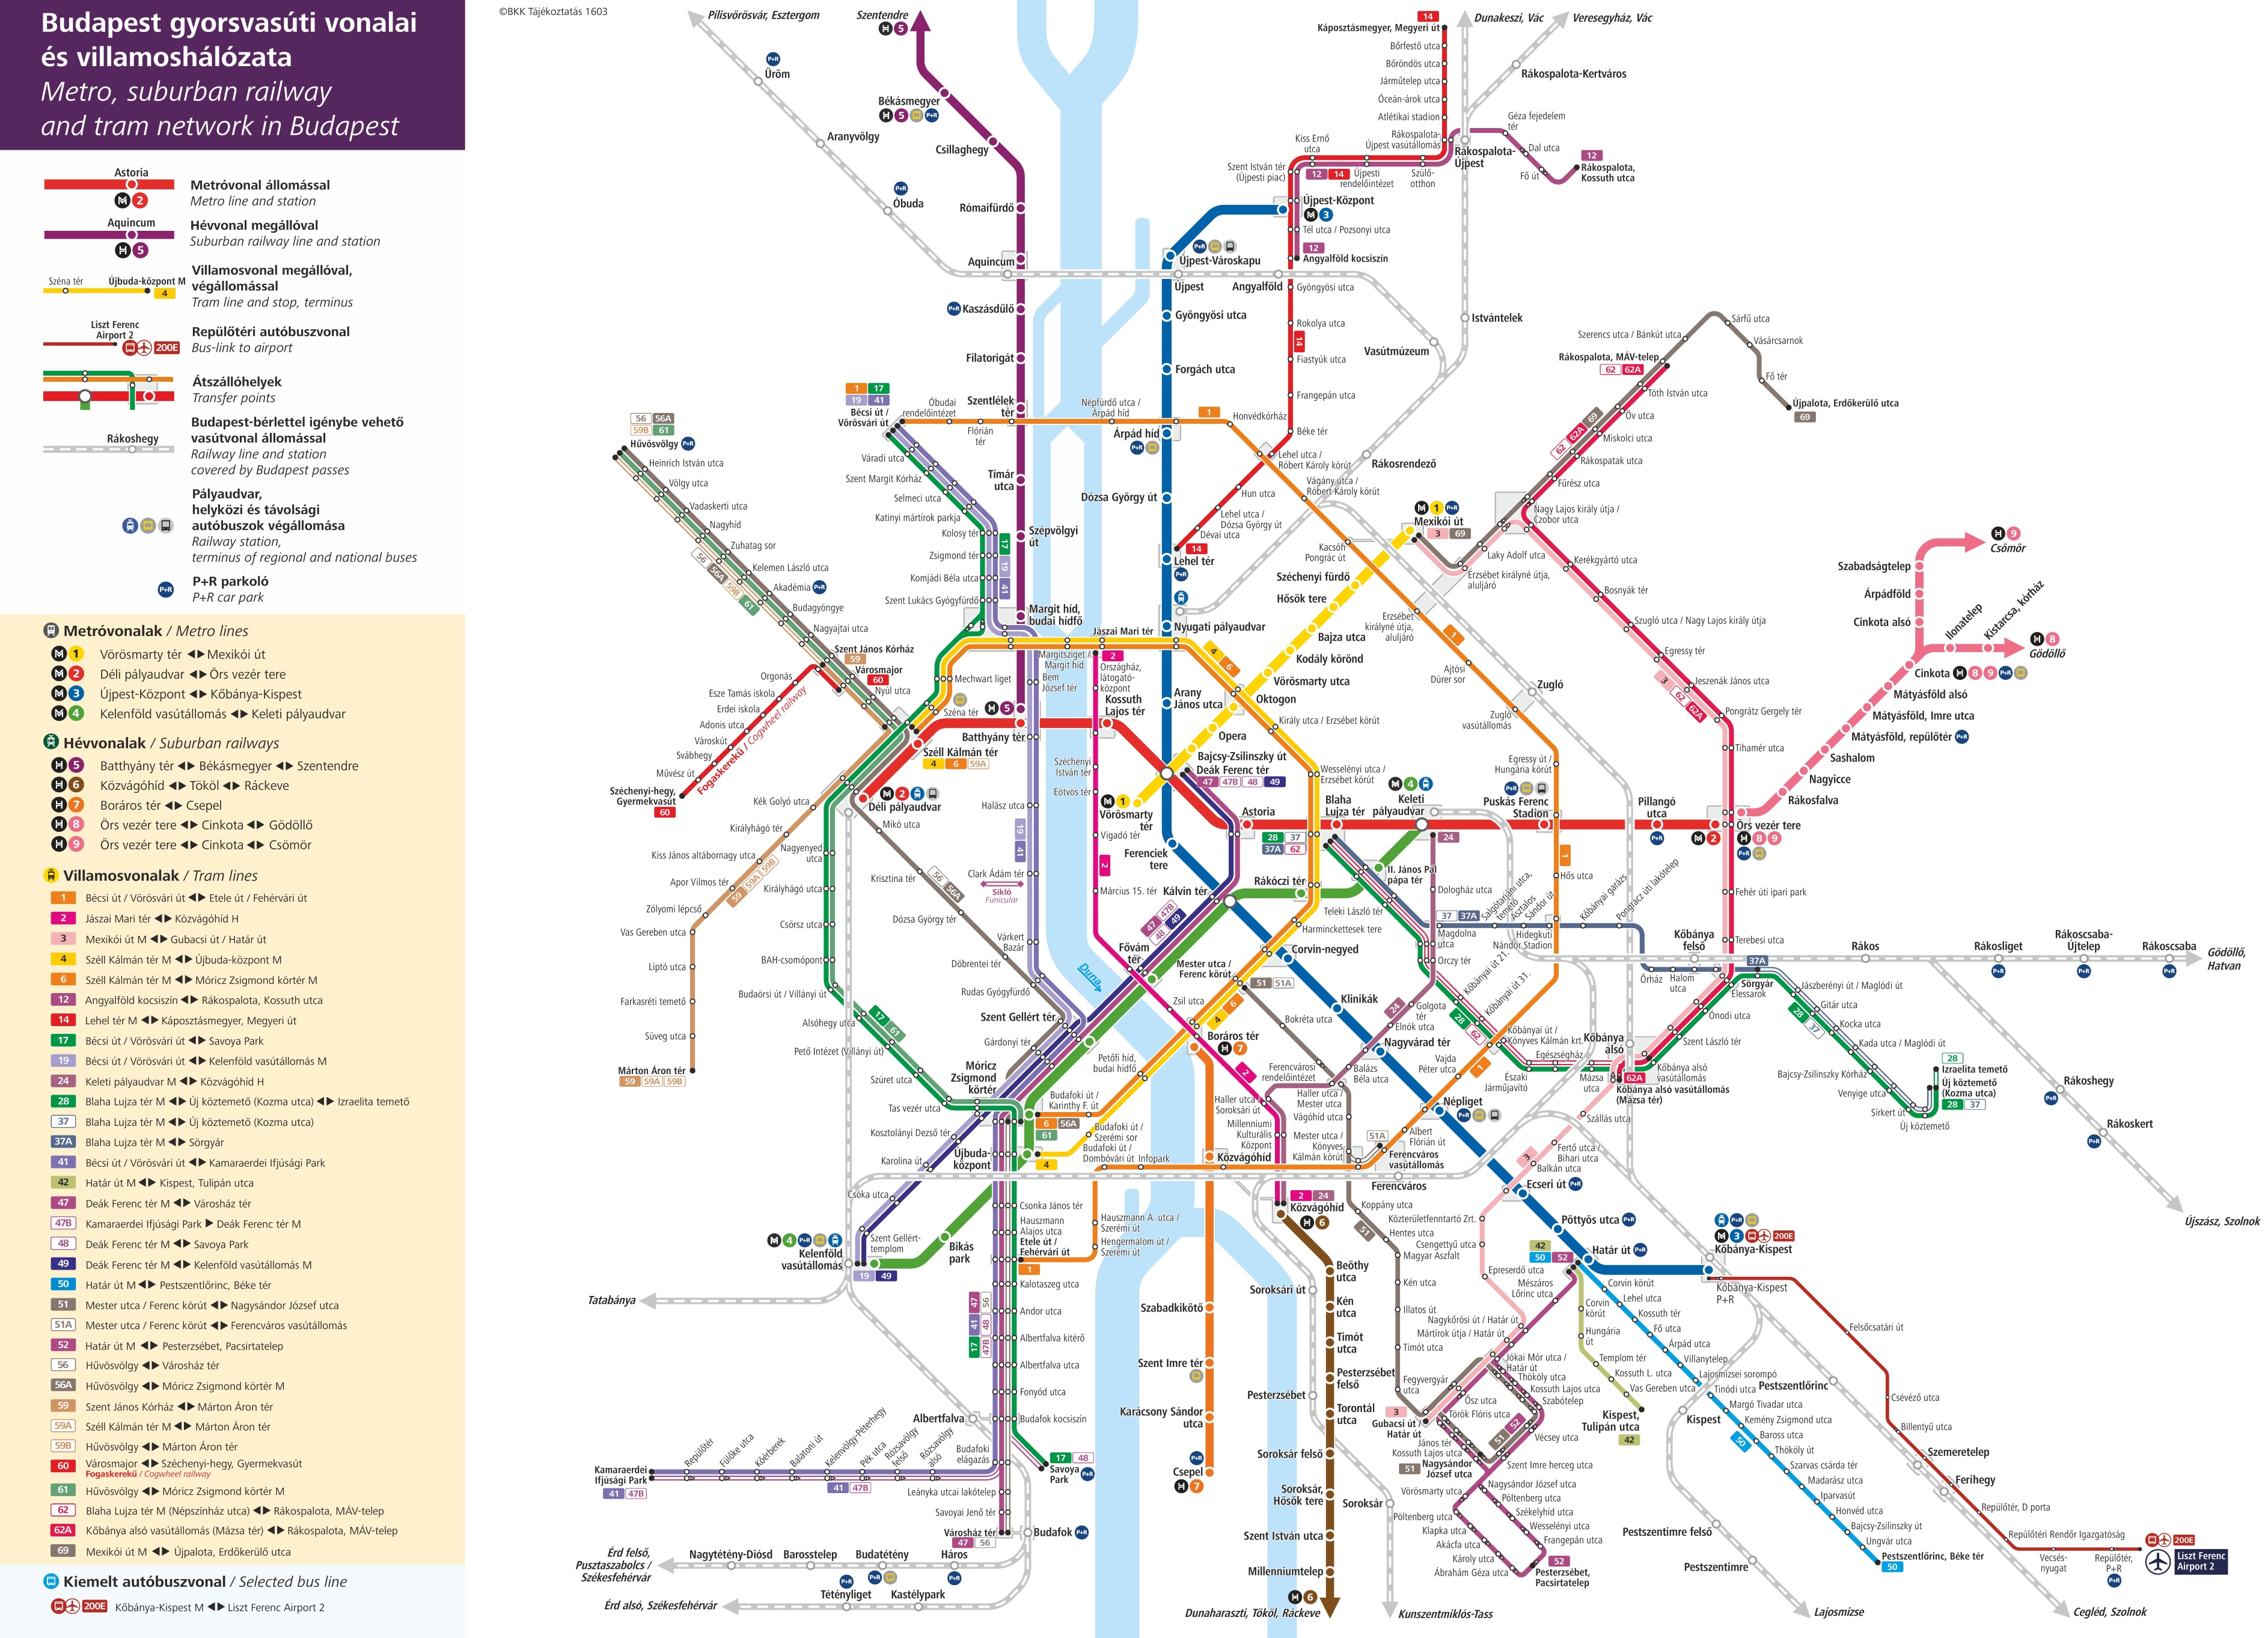 Budapest Metro Tram And Suburban Railway Map